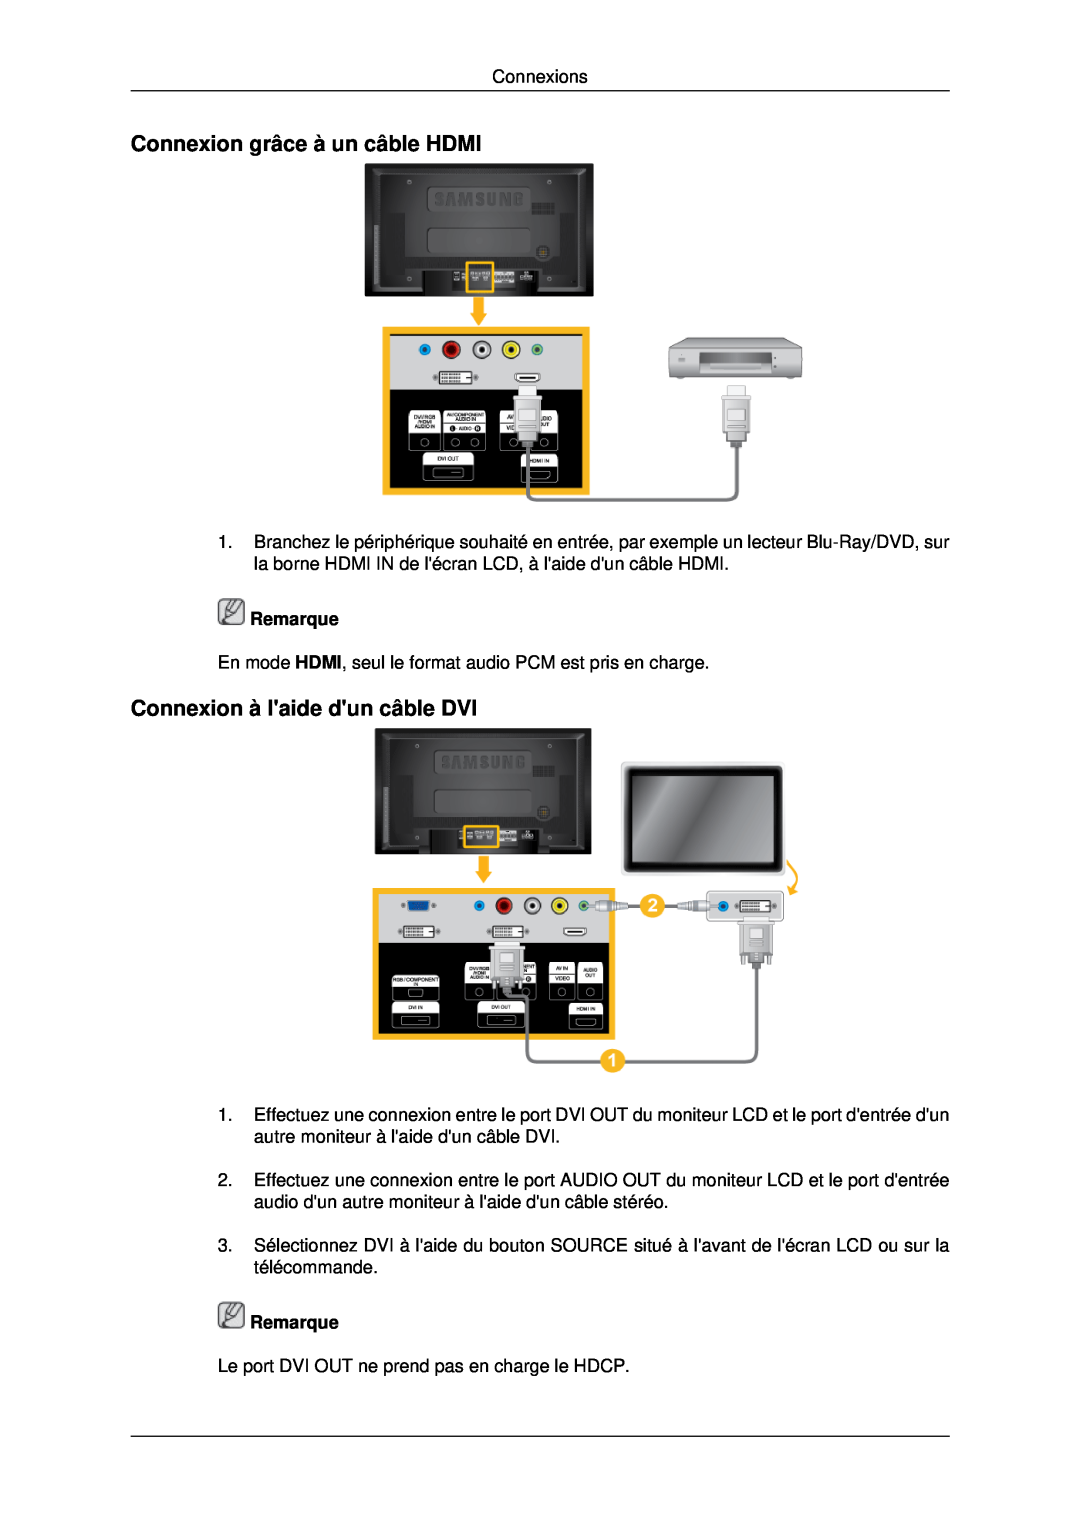 Samsung LH40MRPLBF/EN, LH46MRPLBF/EN manual Connexion grâce à un câble HDMI, Connexion à laide dun câble DVI, Remarque 